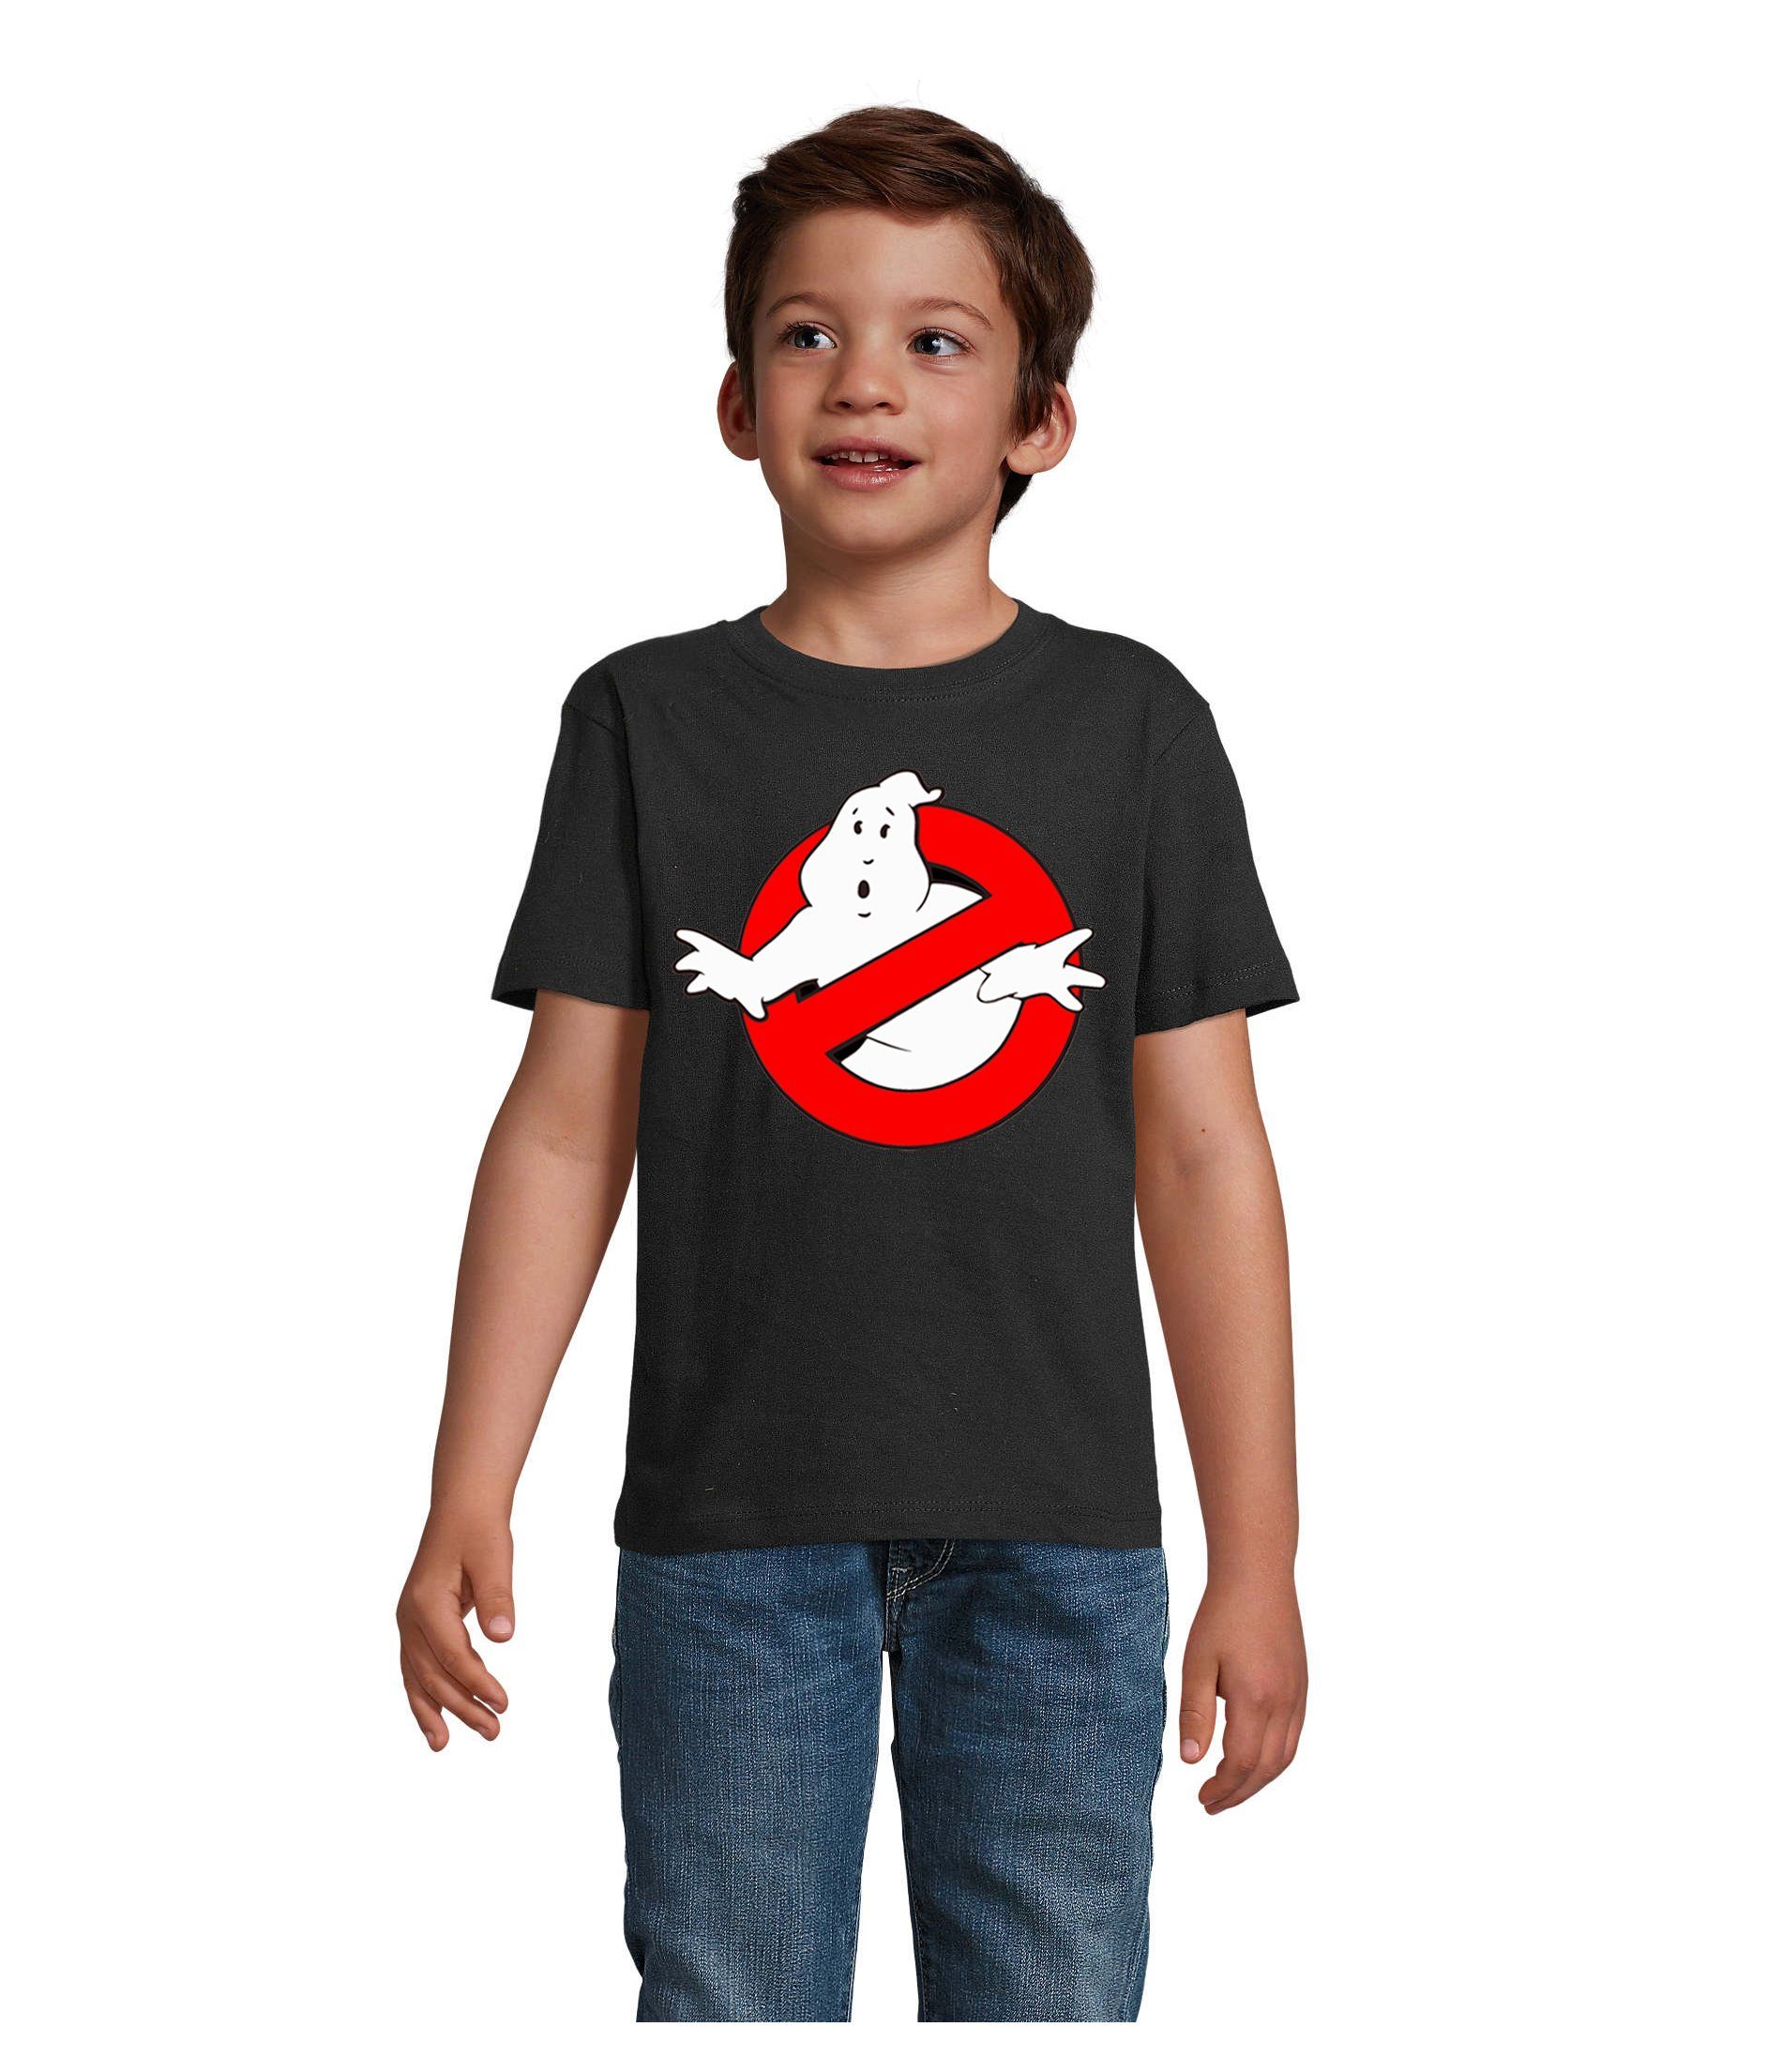 Blondie & Brownie T-Shirt Kinder Jungen & Mädchen Ghostbusters Ghost Geister Geisterjäger in vielen Farben Schwarz